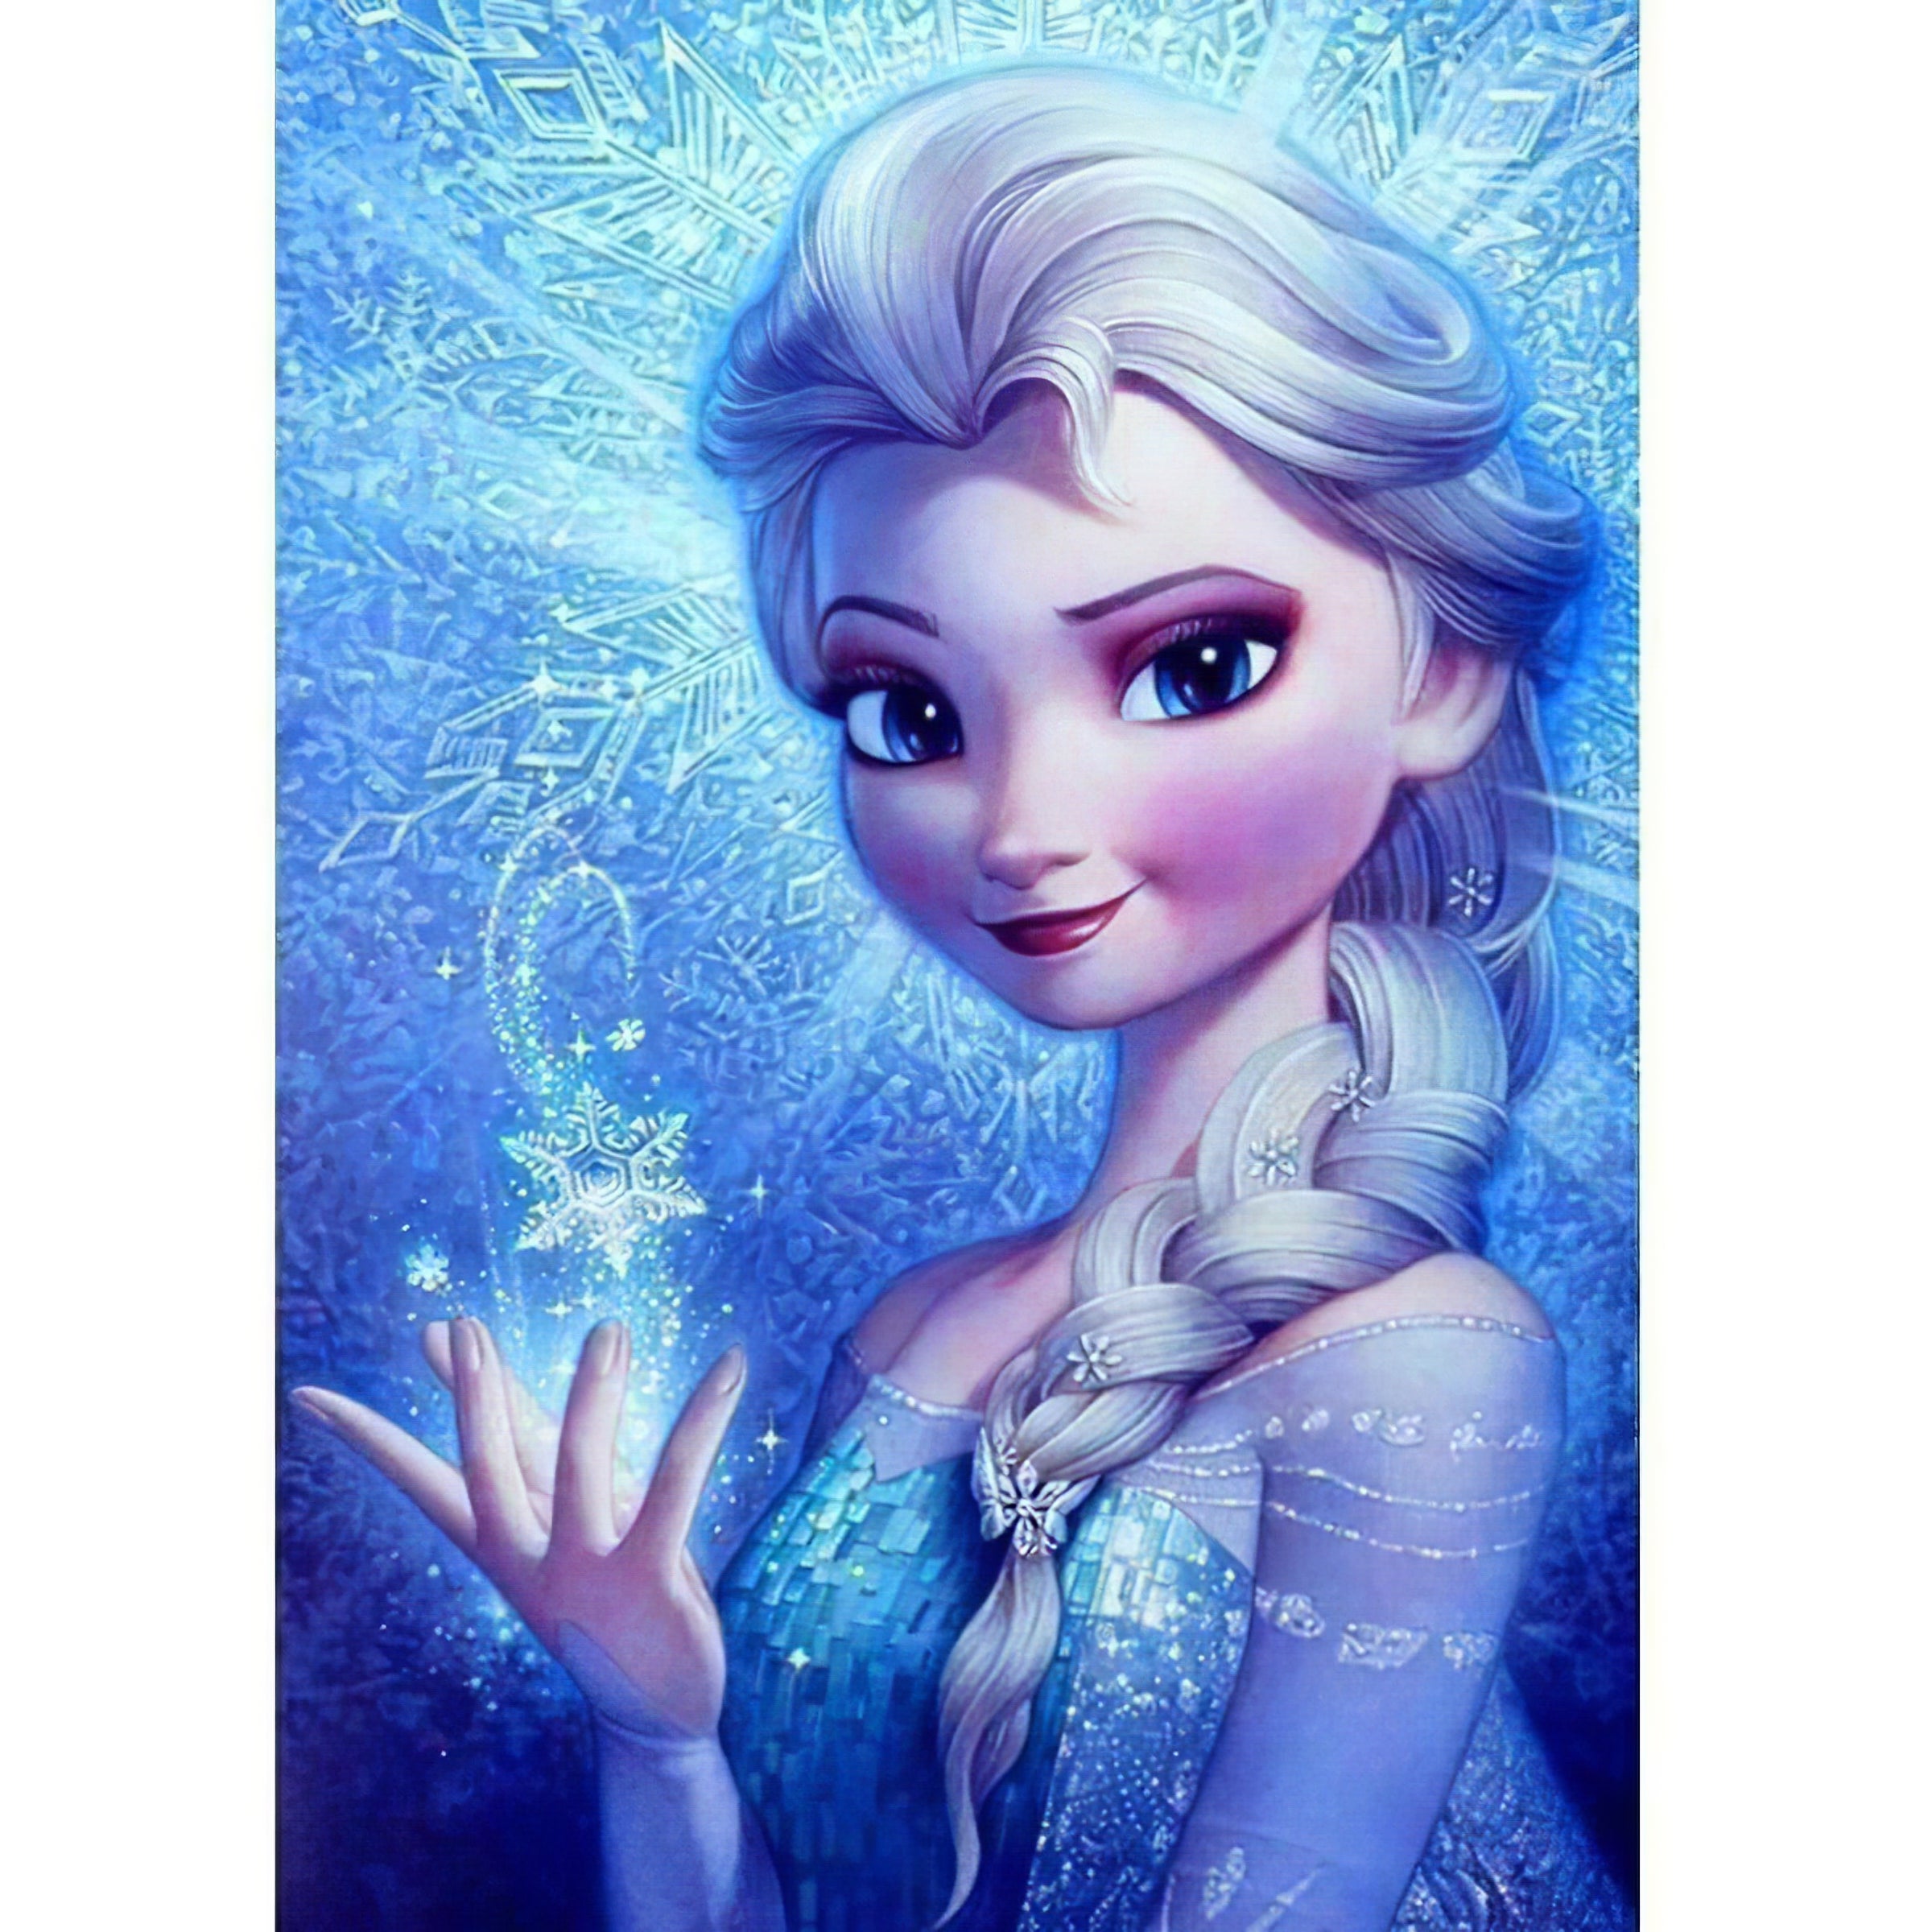 Una pintura de diamantes llamado 'Elsa' - Meencantalapinturadediamantes